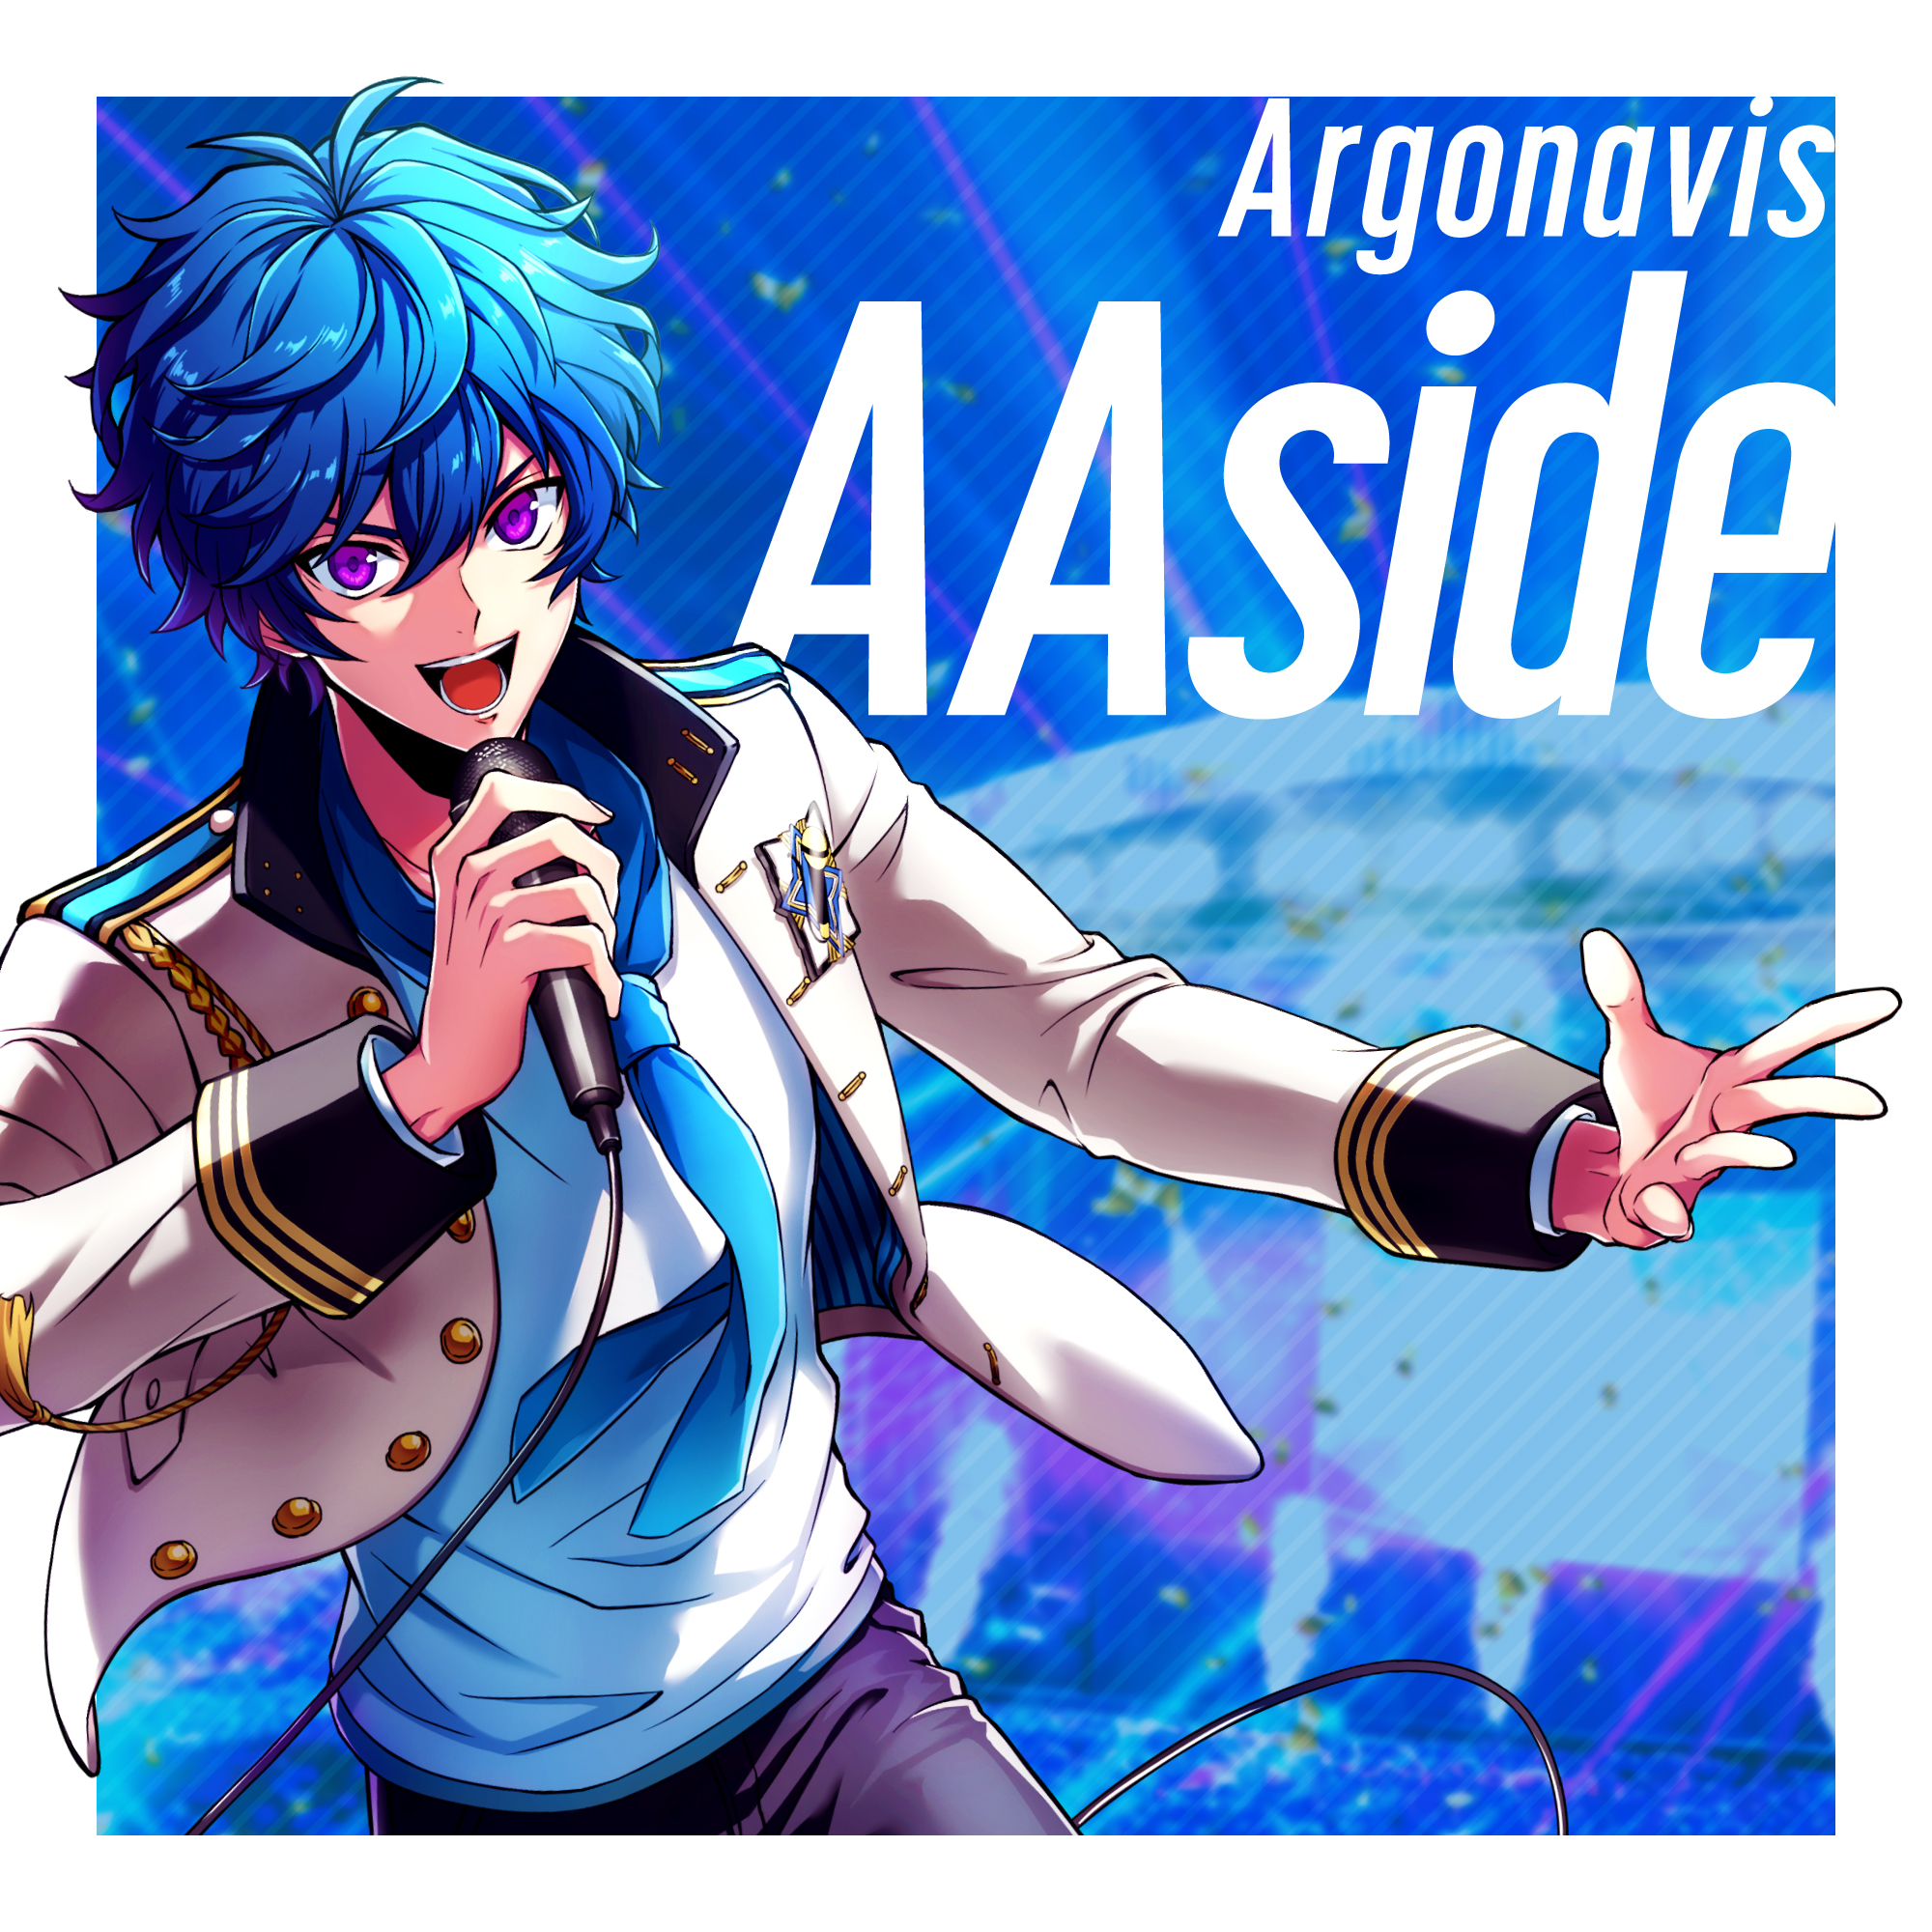 ARGONAVIS from BanG Dream! AAside/Event List - from ARGONAVIS Wiki